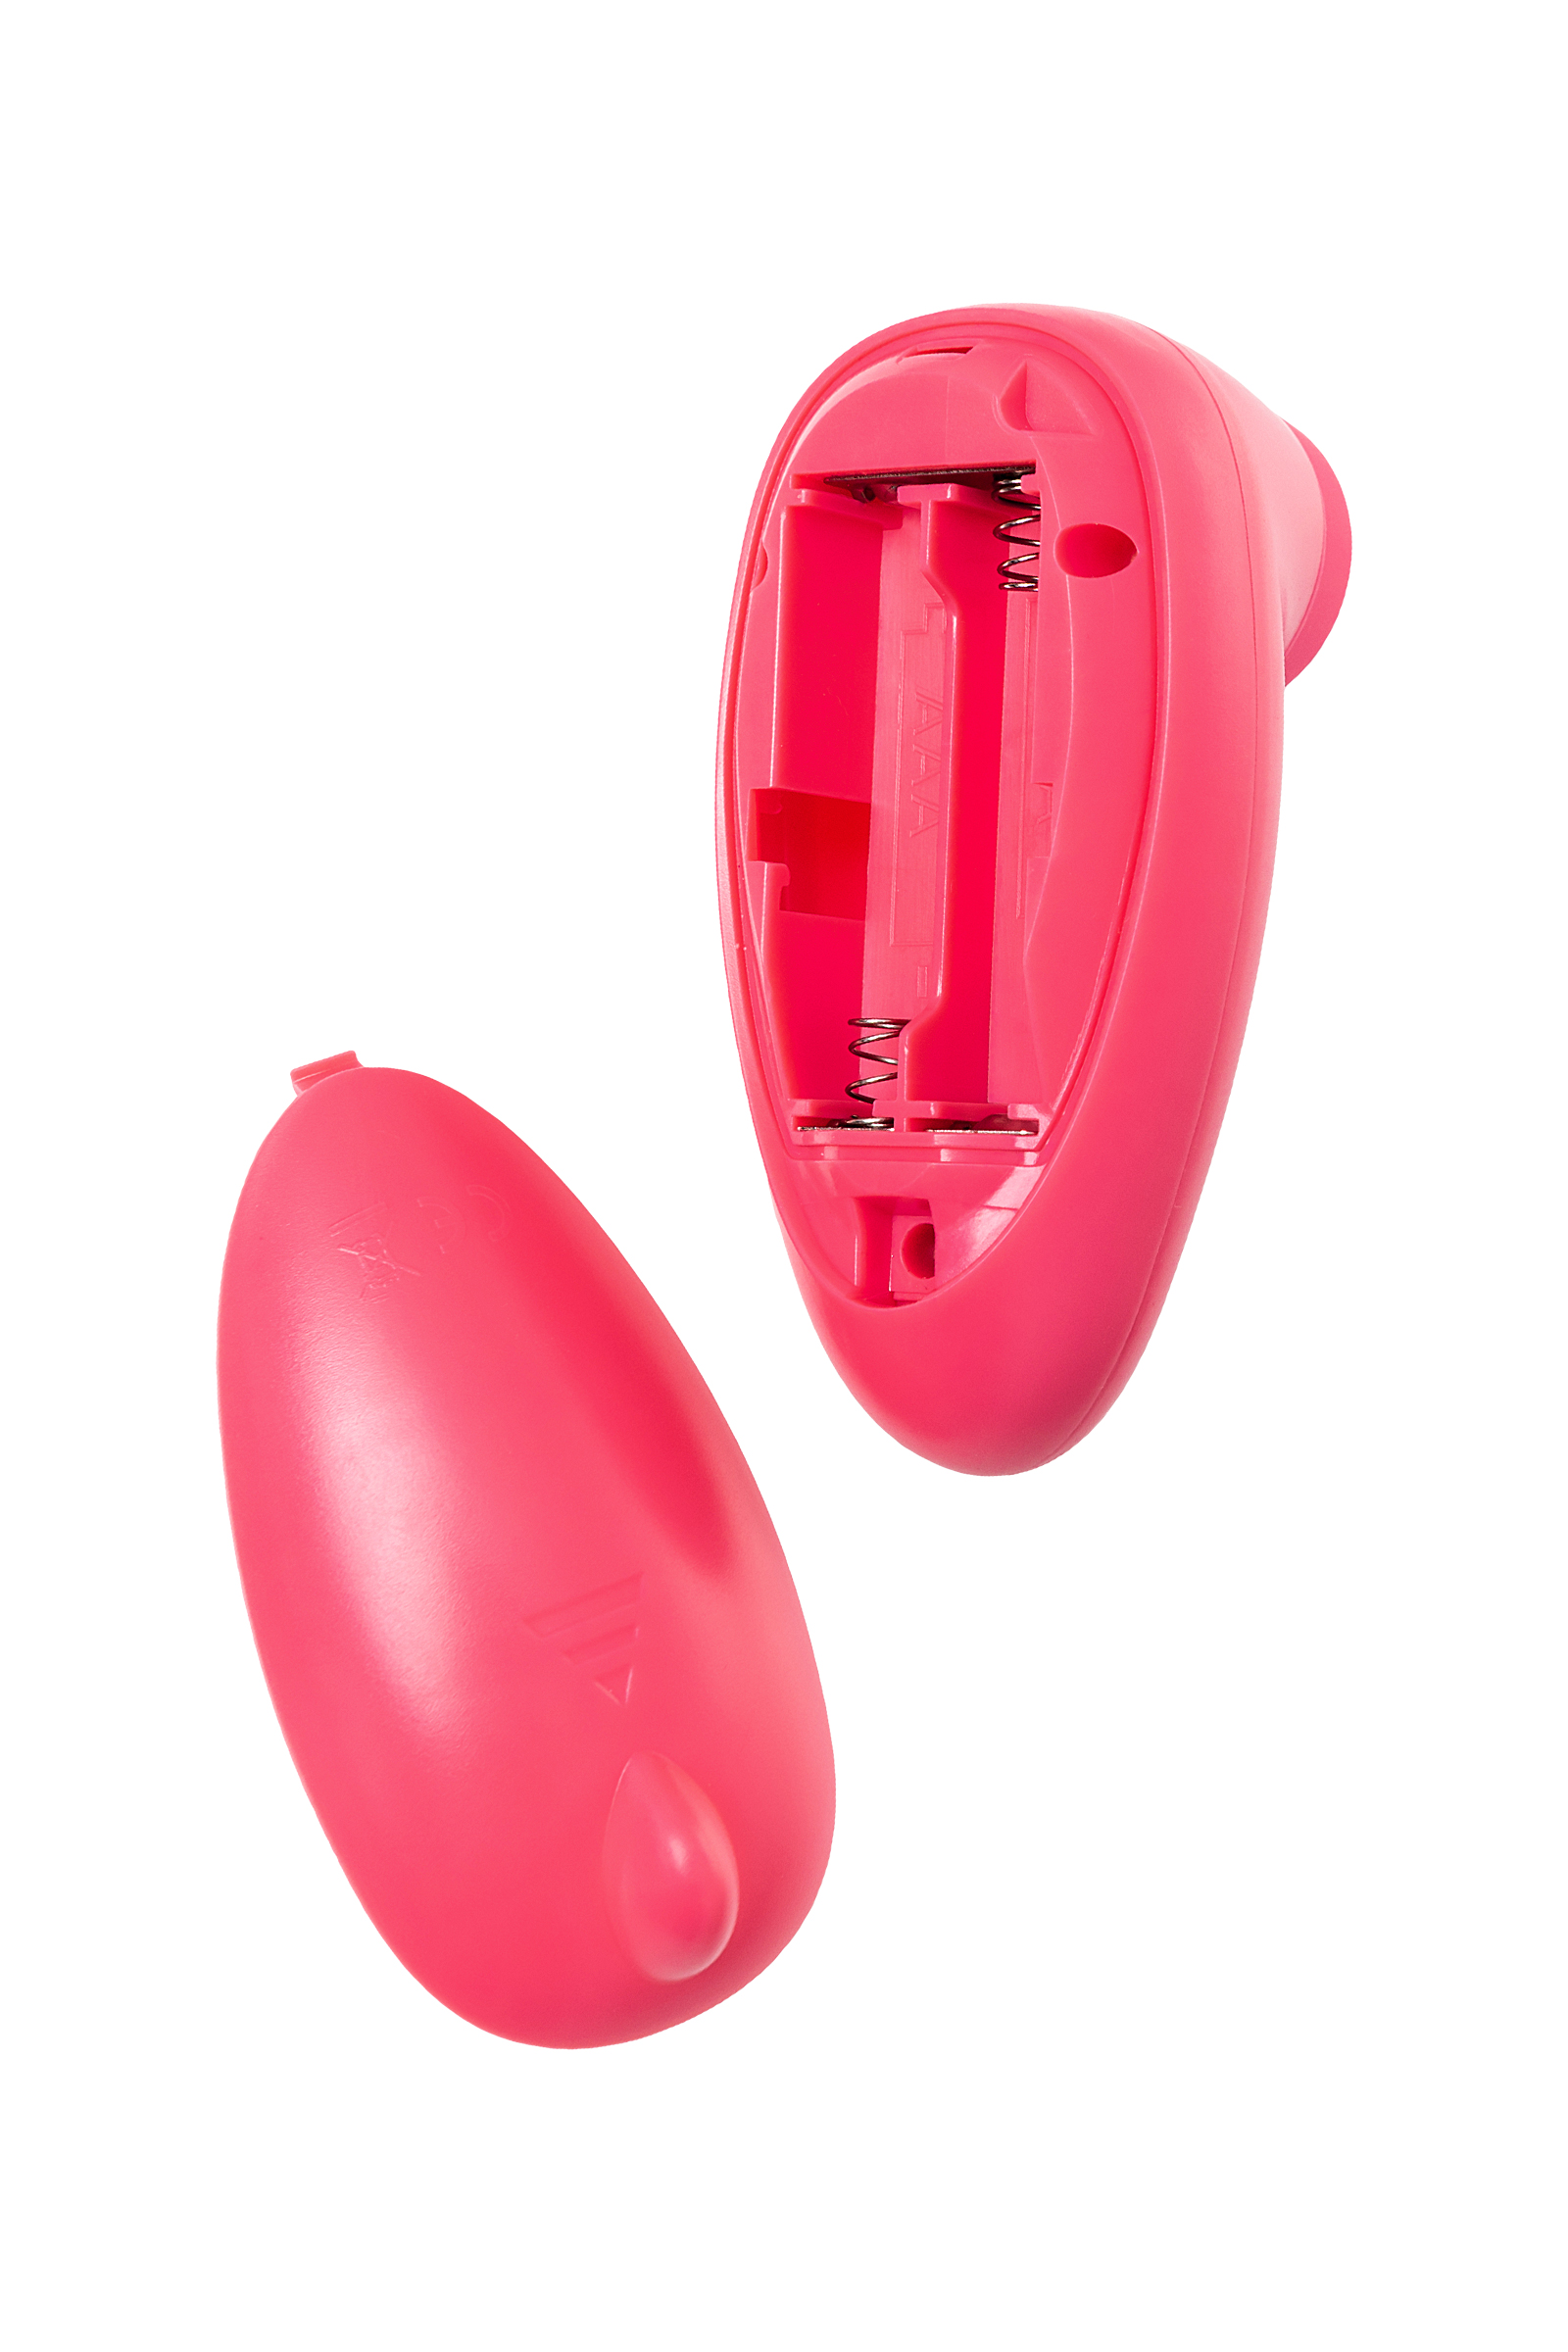 Вакуумный стимулятор клитора PPP CHUPA-CHUPA ZENGI ROTOR, ABS-пластик, розовый, 9 см. Фото N6